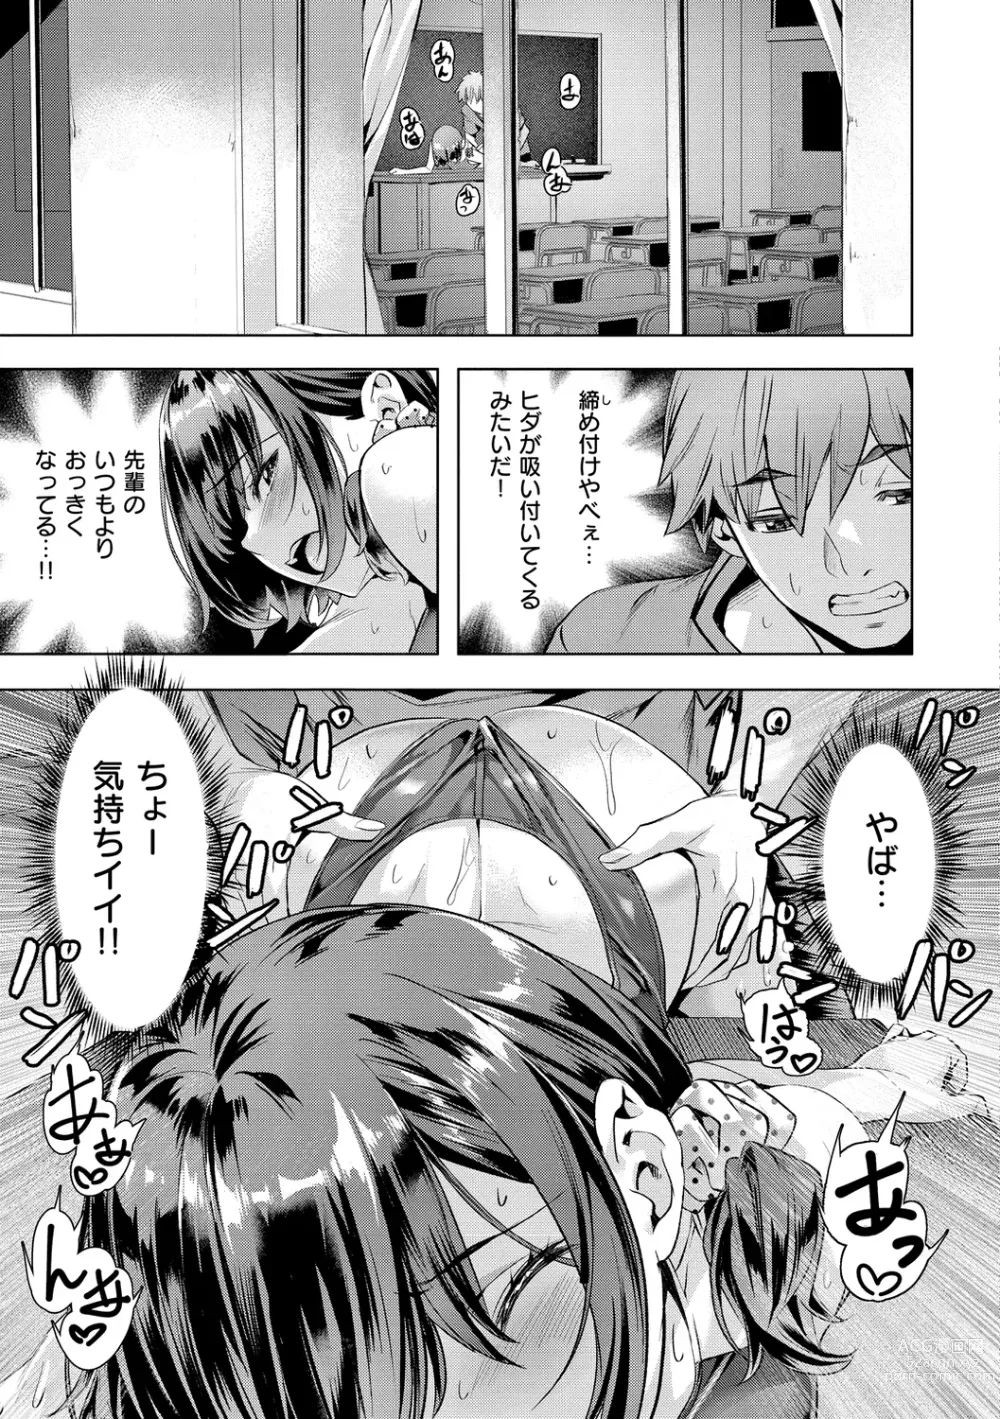 Page 15 of manga Binetsu Emotion - Sensual Emotion